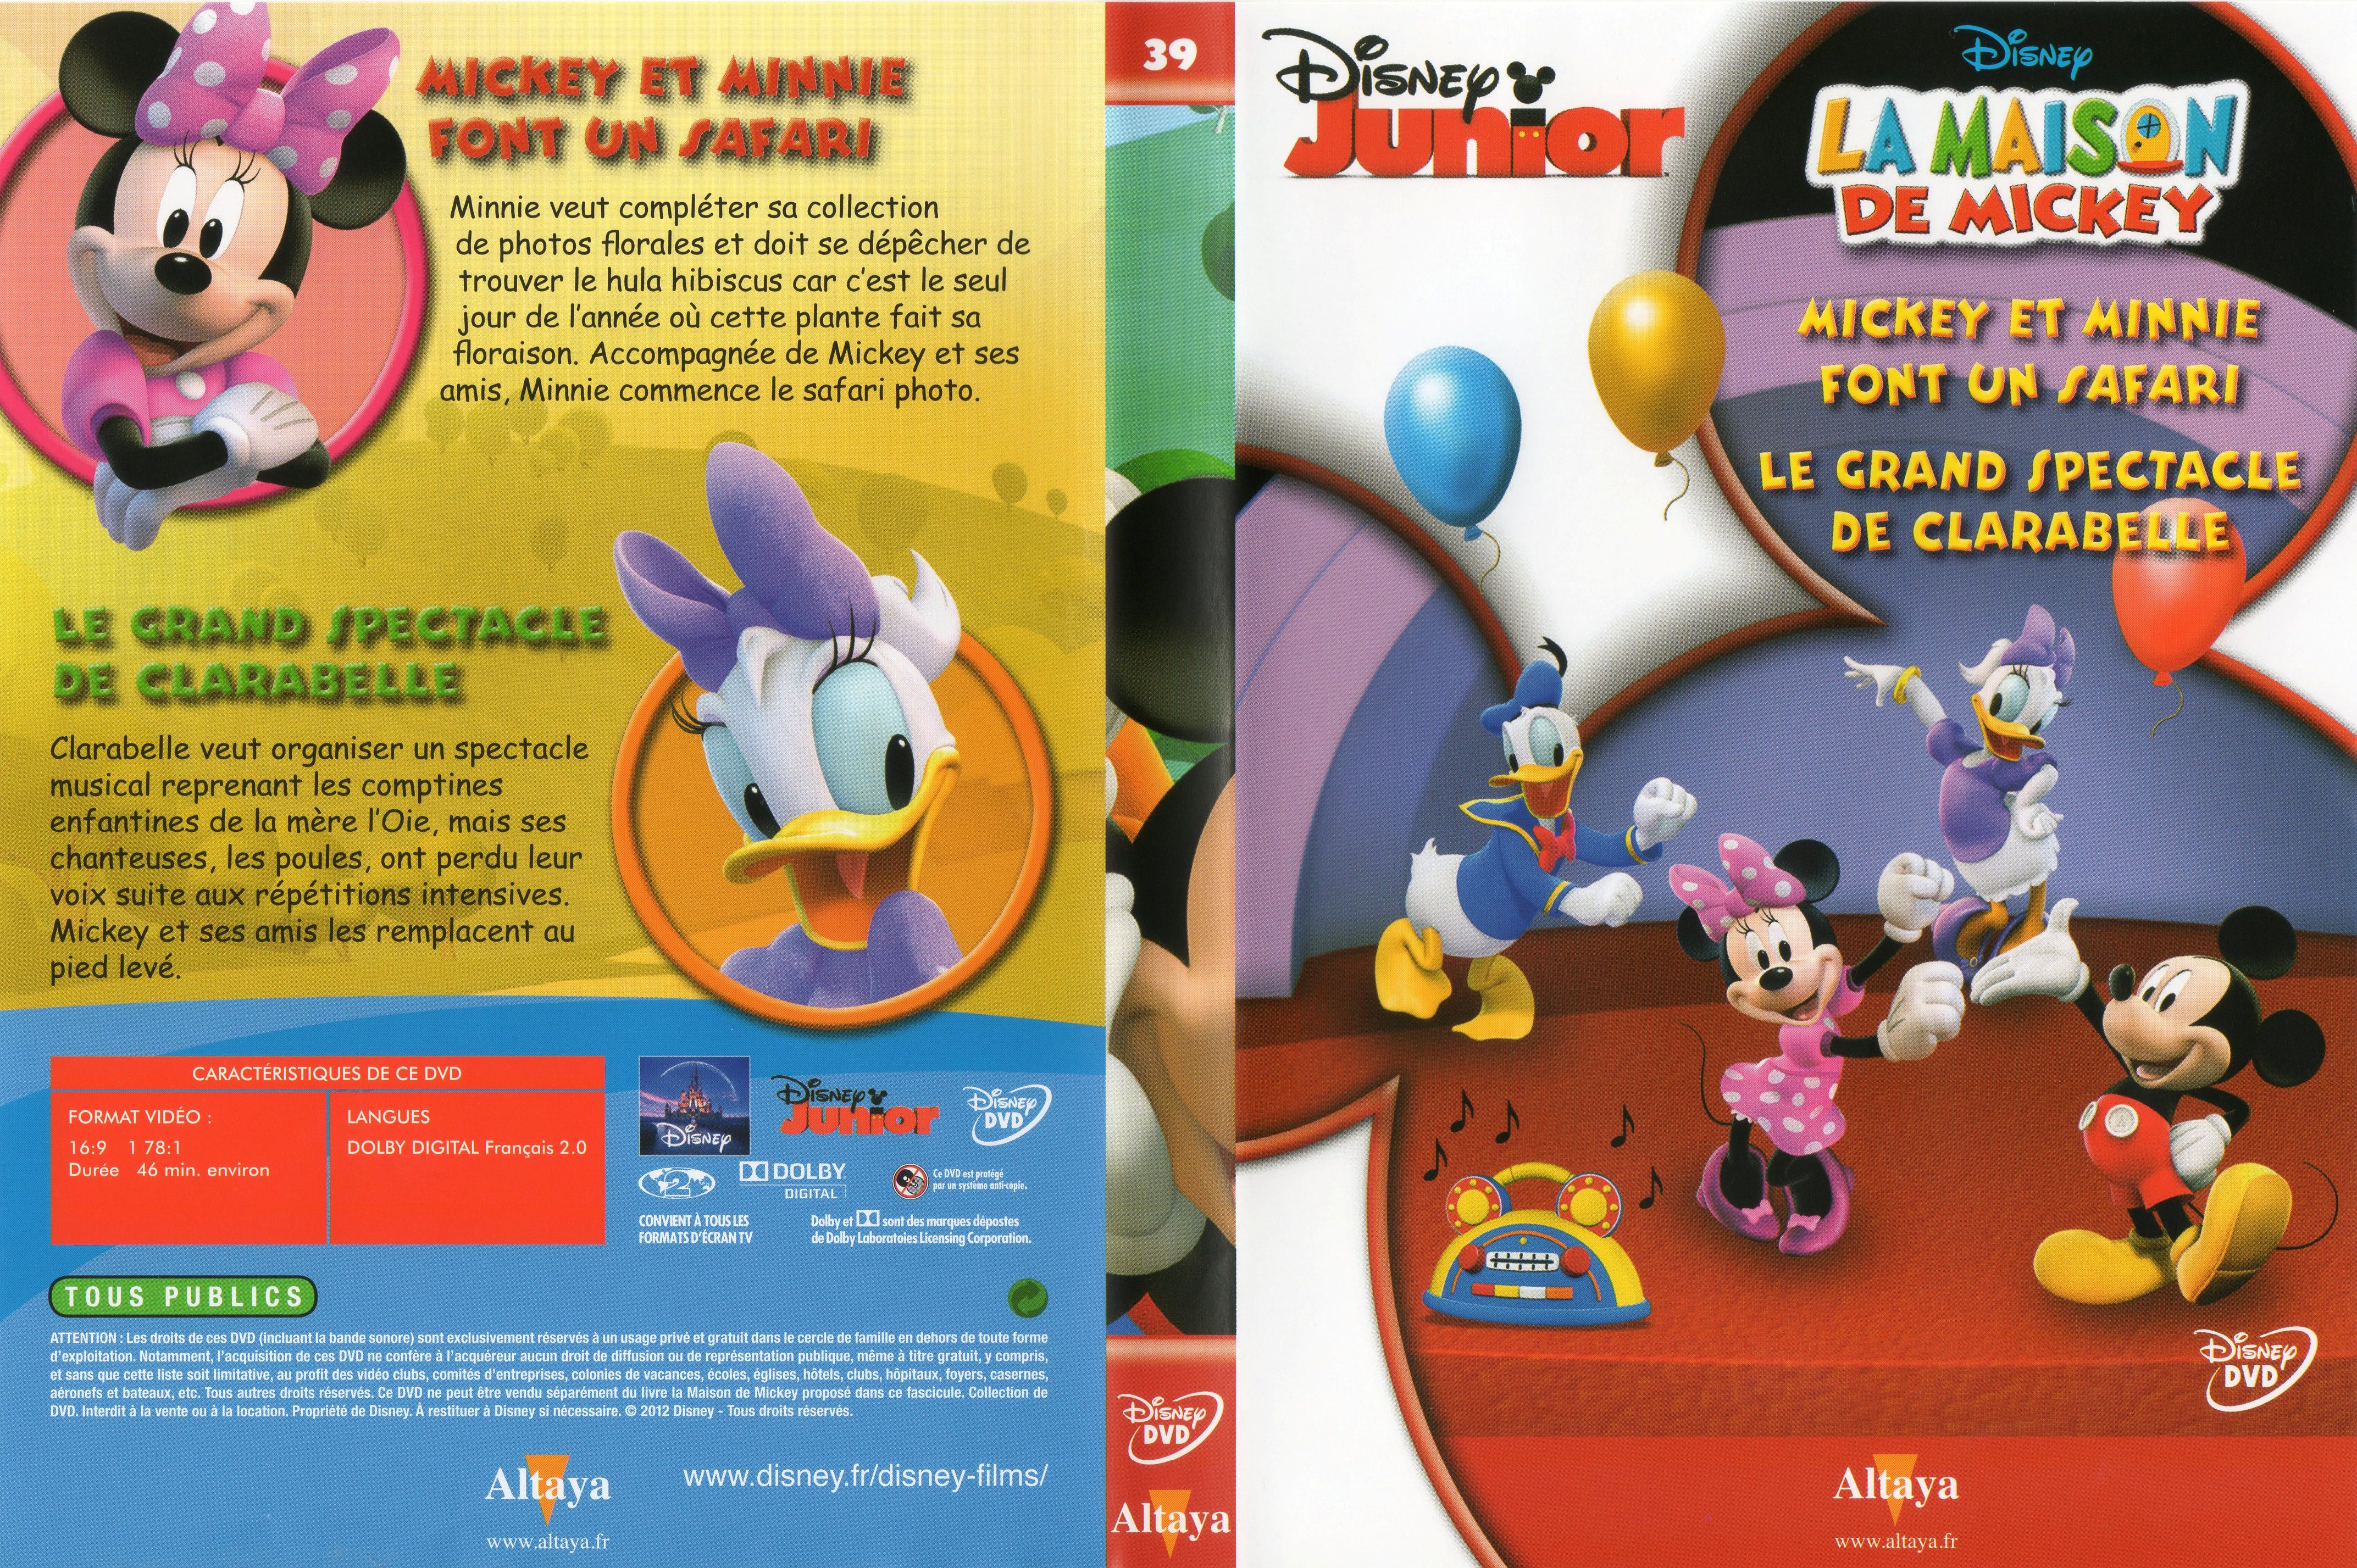 Jaquette DVD La maison de Mickey DVD 39